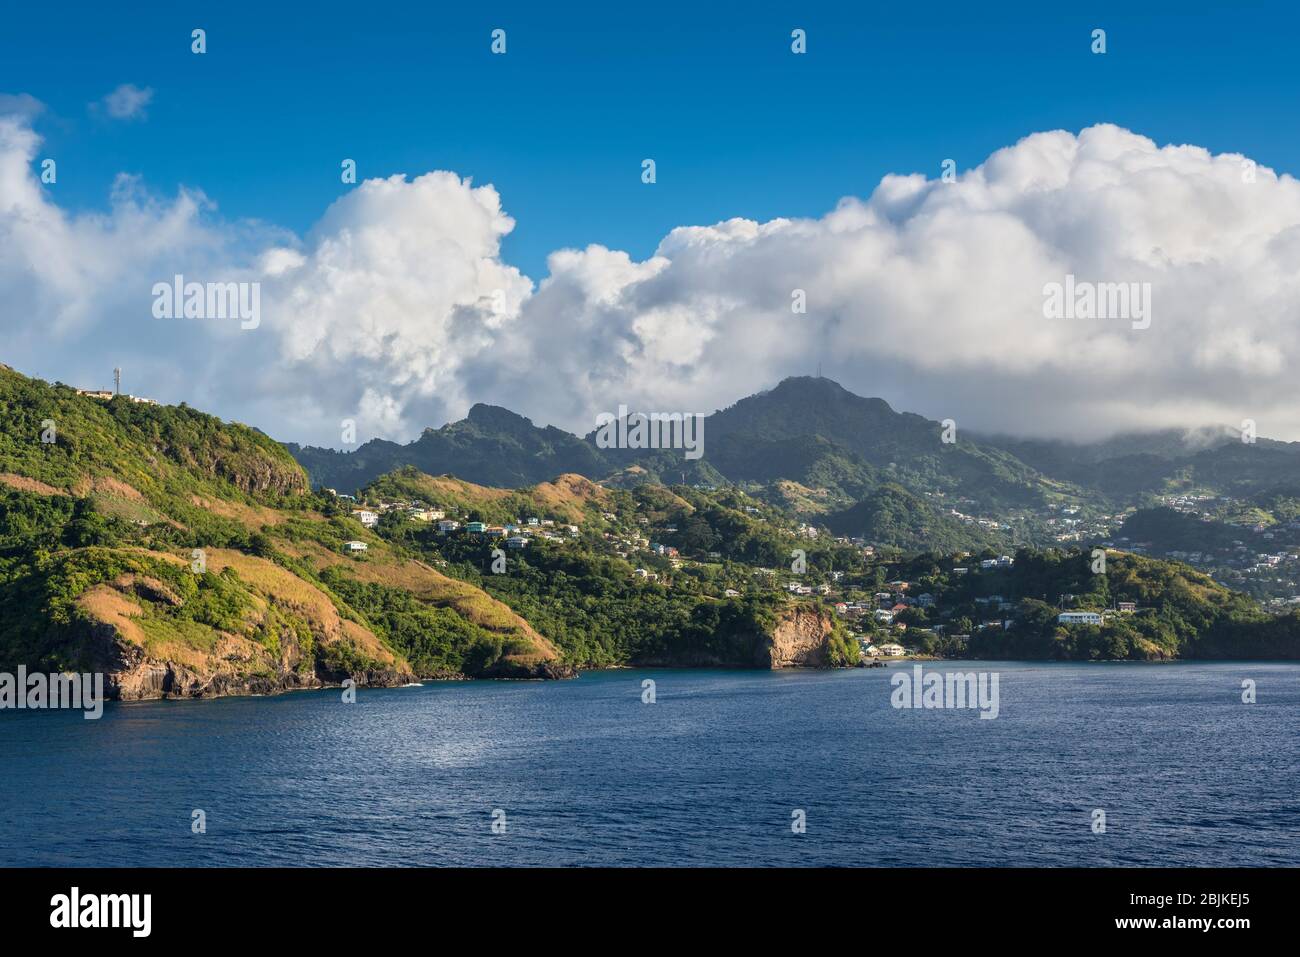 Vista de la costa con muchas casas en la colina en Clare Valley, Kingstown, la isla de San Vicente, San Vicente y las Granadinas. Foto de stock